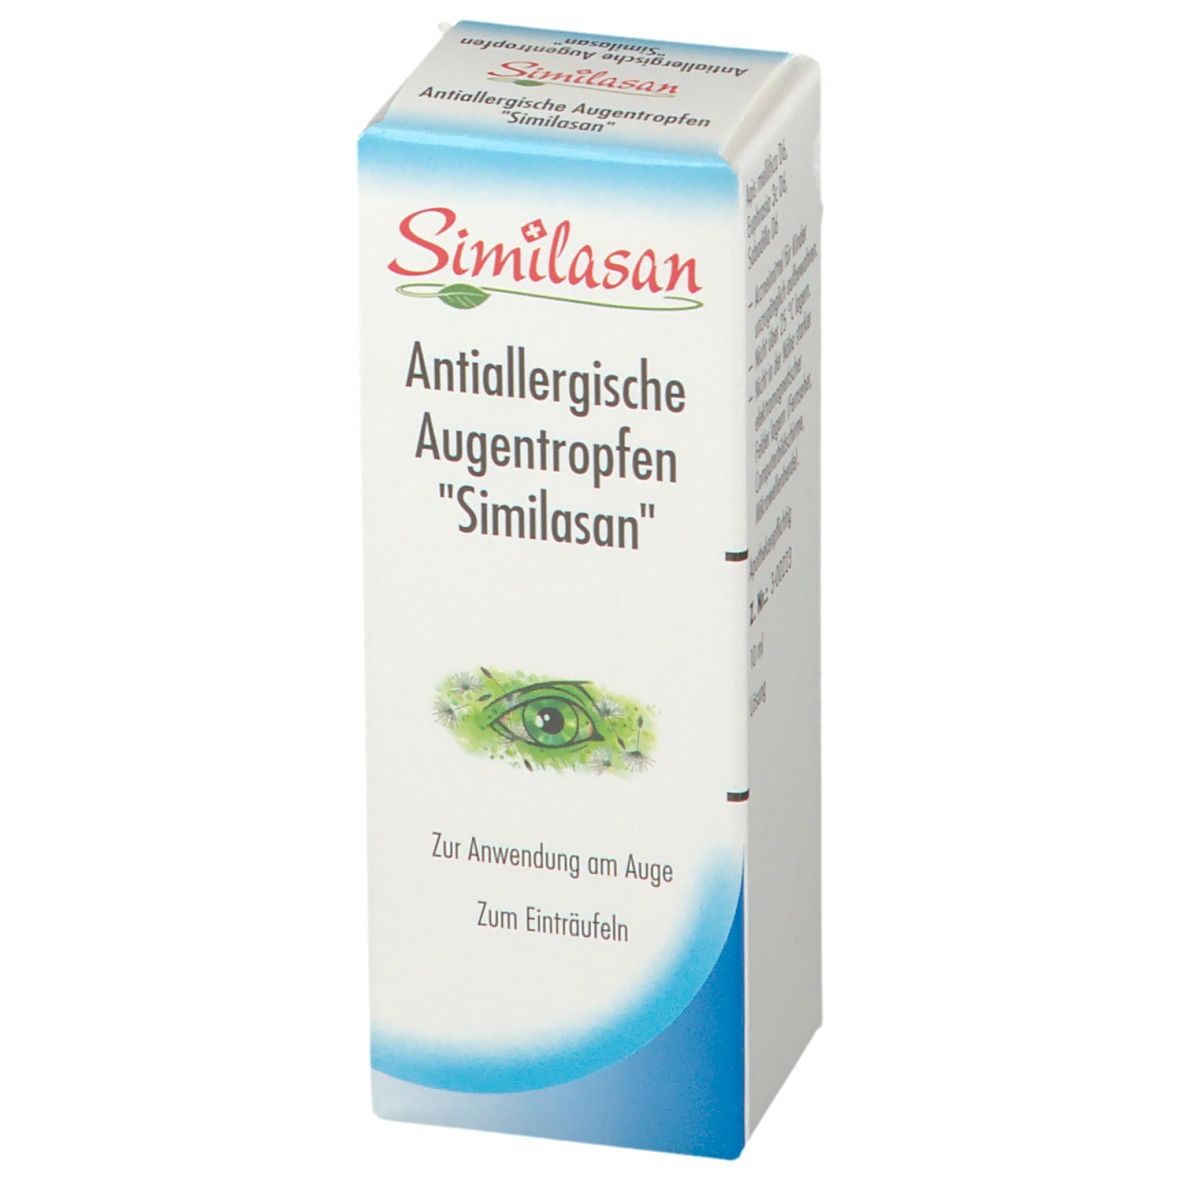 Antiallergische Augentropfen Similasan - jetzt 10% sparen mit Code similasan10